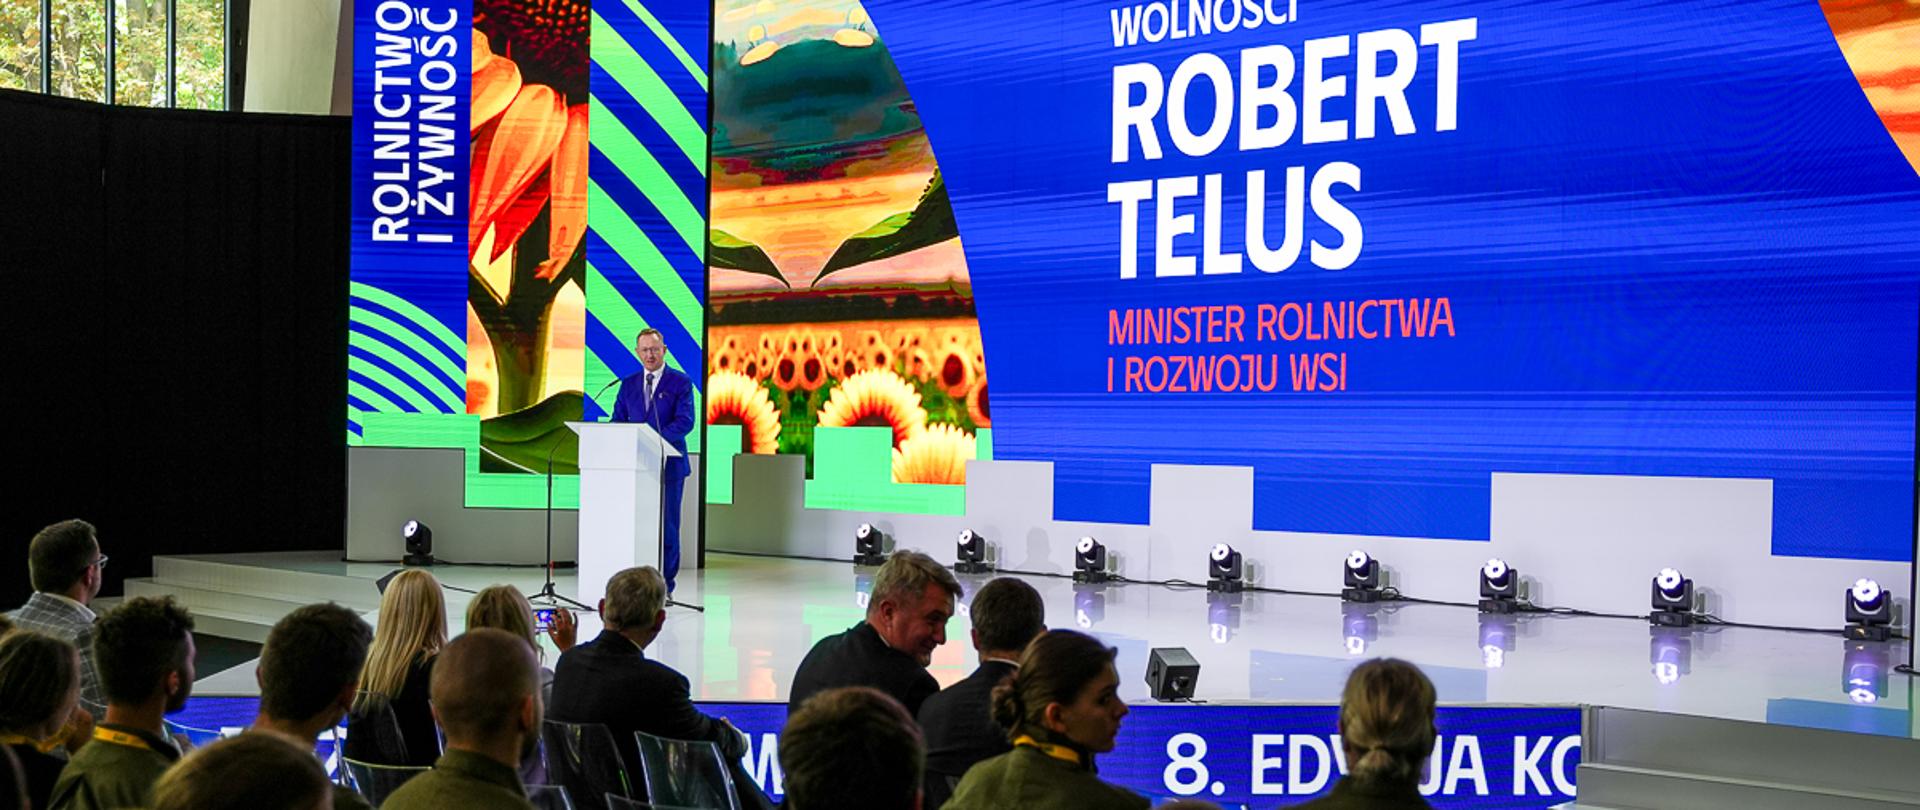 Minister Robert Telus stojący na scenie przy mównicy